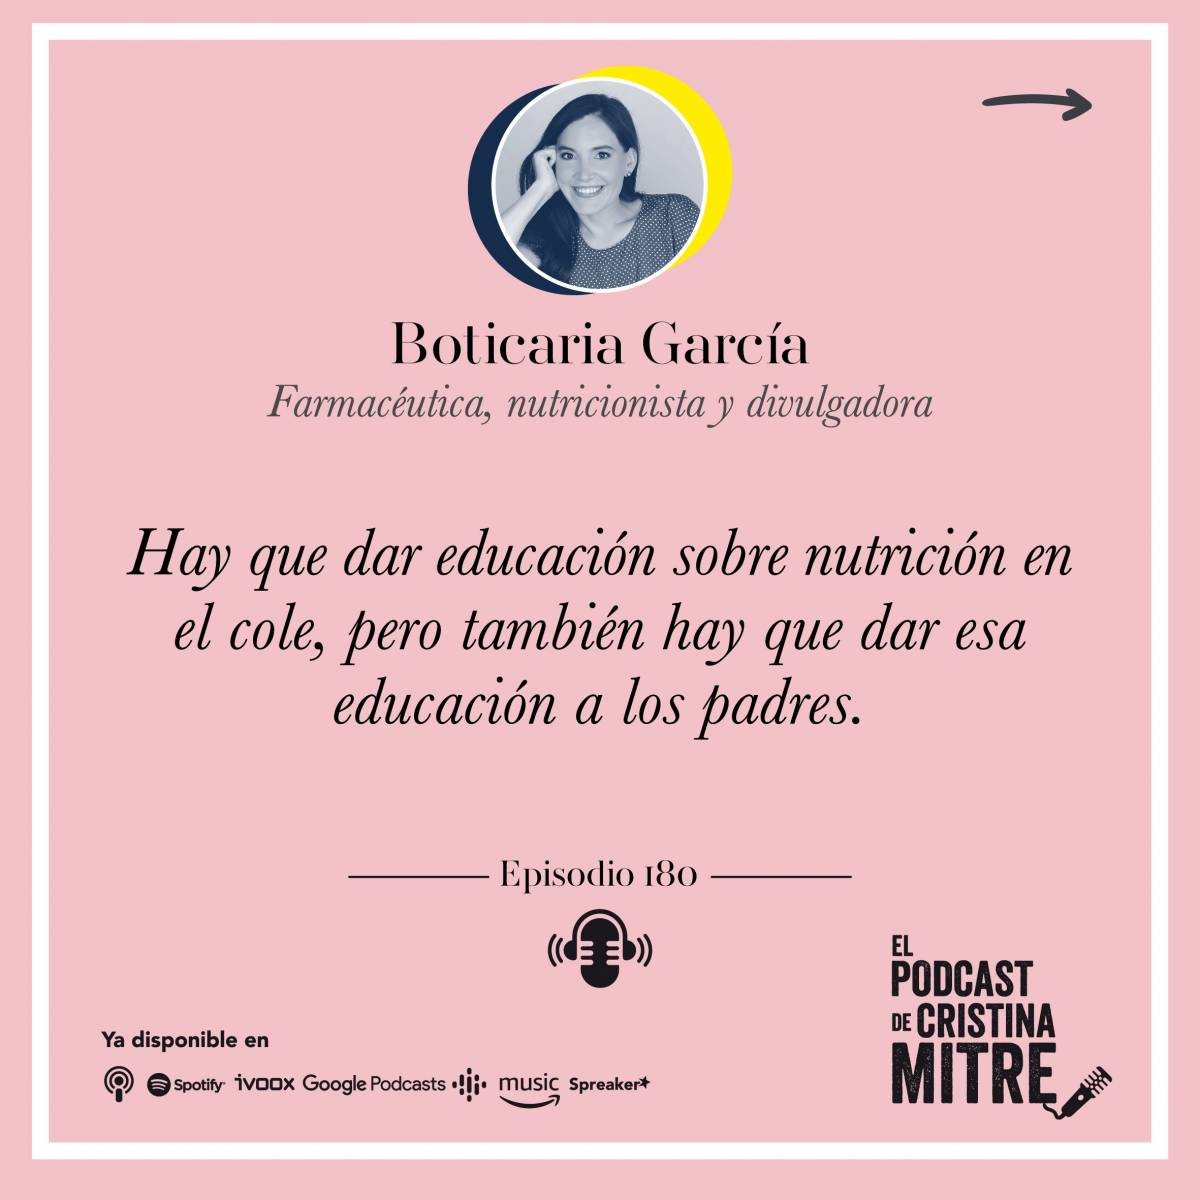 El Podcast de Cristina Mitre Boticaria García nutrición